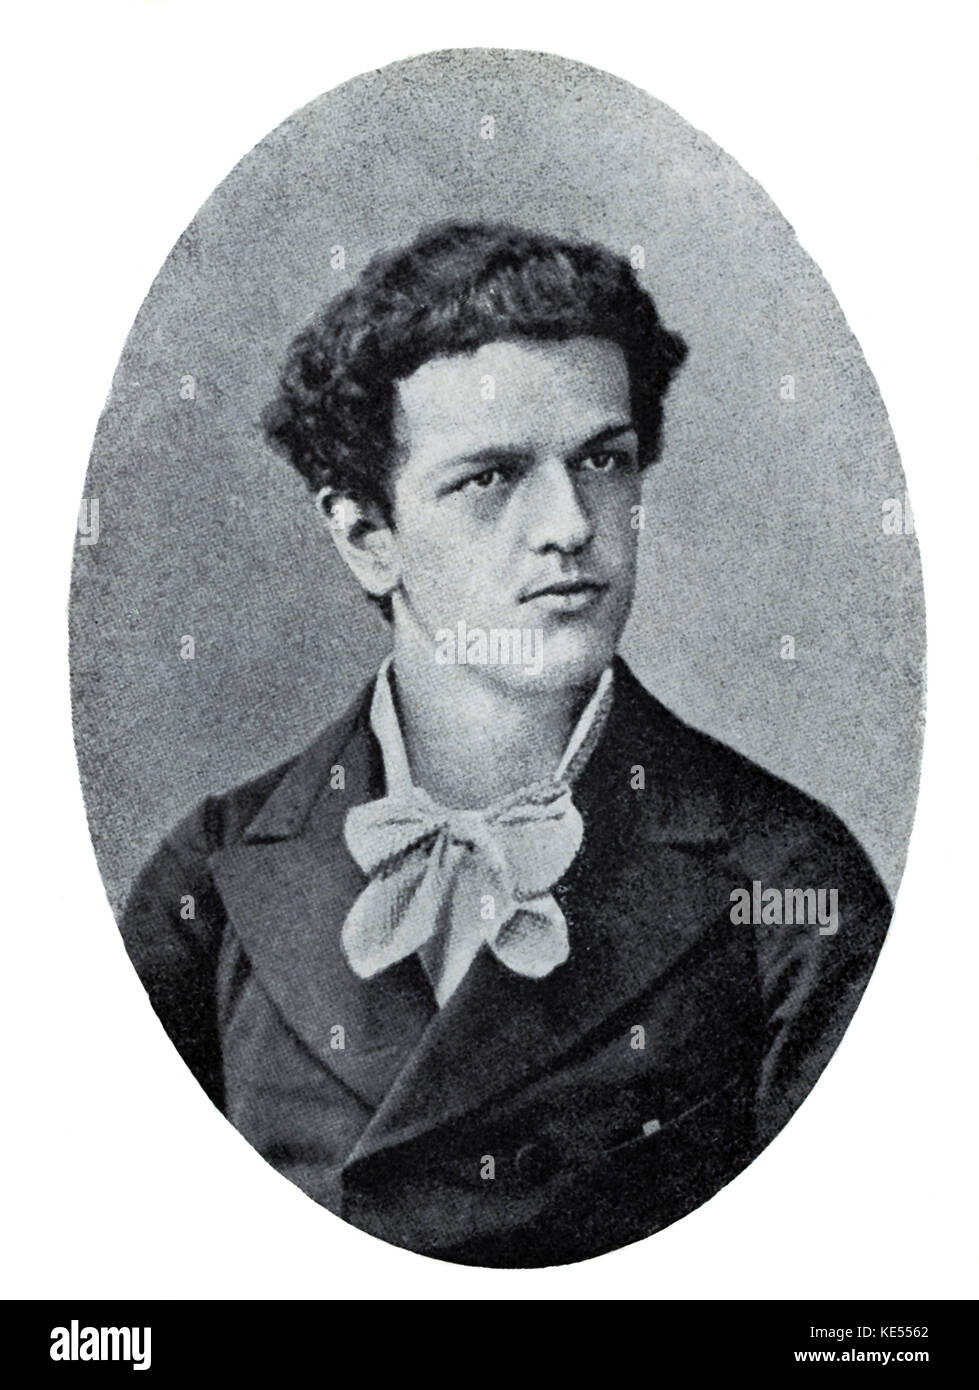 Claude Debussy Portrait - Fotografie, Florenz, C. 1880. Der französische Komponist, 22. August 1862 - 25. März 1918. Stockfoto